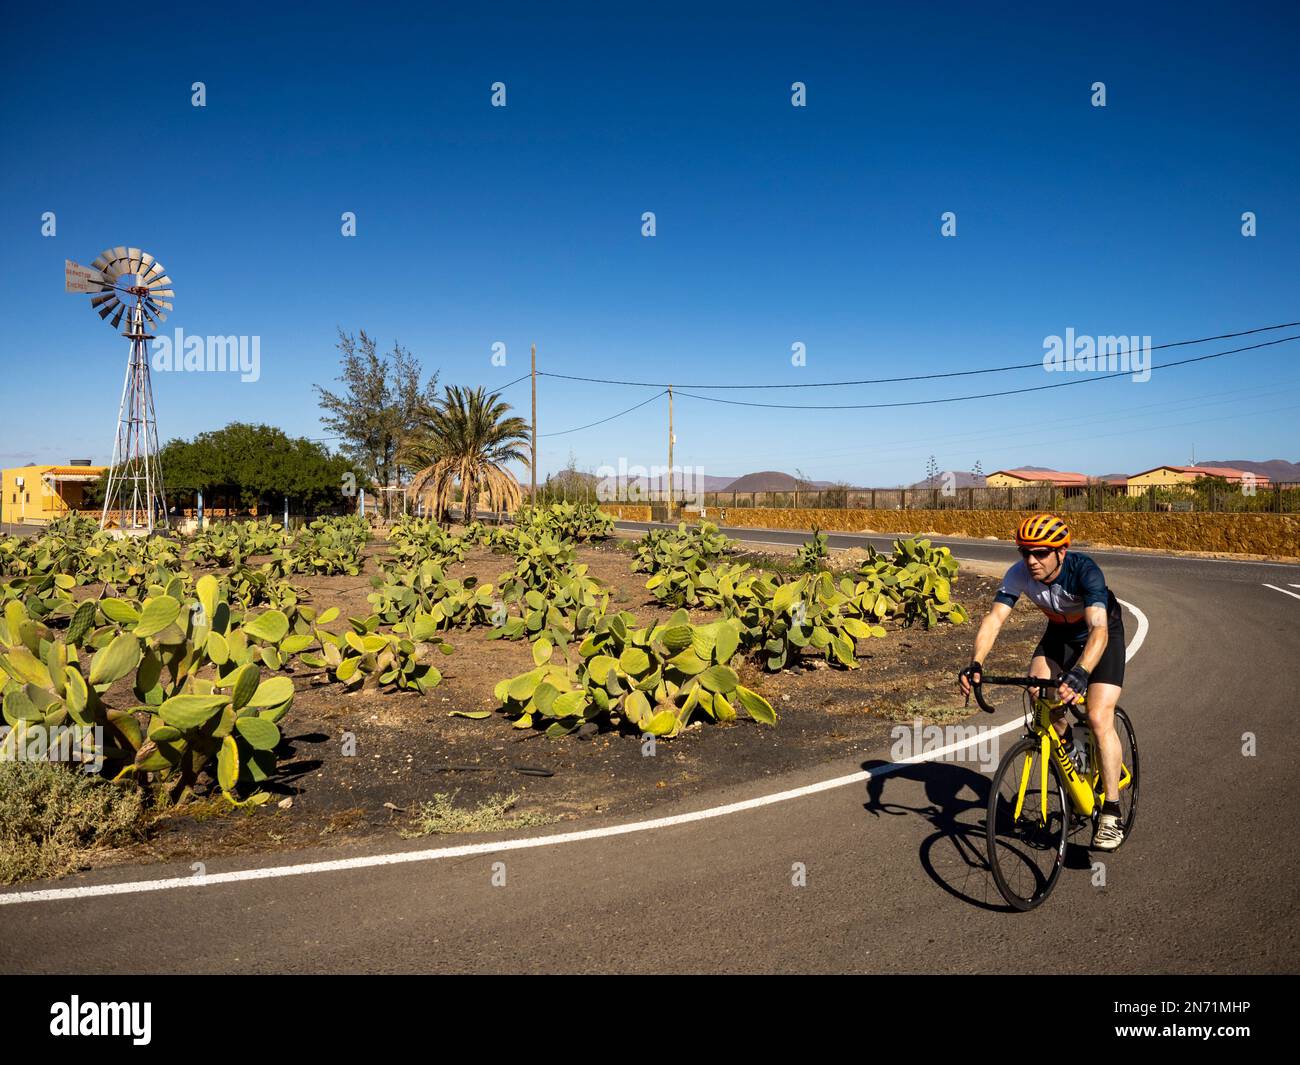 Cycliste sur la route de la campagne à Juan Gopor (Tuineje), Furetventura, avec plantation de cactus et moulin à vent avec l'inscription 'The Aermotor Chicago'. Les moulins à vent sont utilisés à ce jour sur Fuerteventura pour pomper l'eau souterraine sans électricité ou pompes diesel Banque D'Images